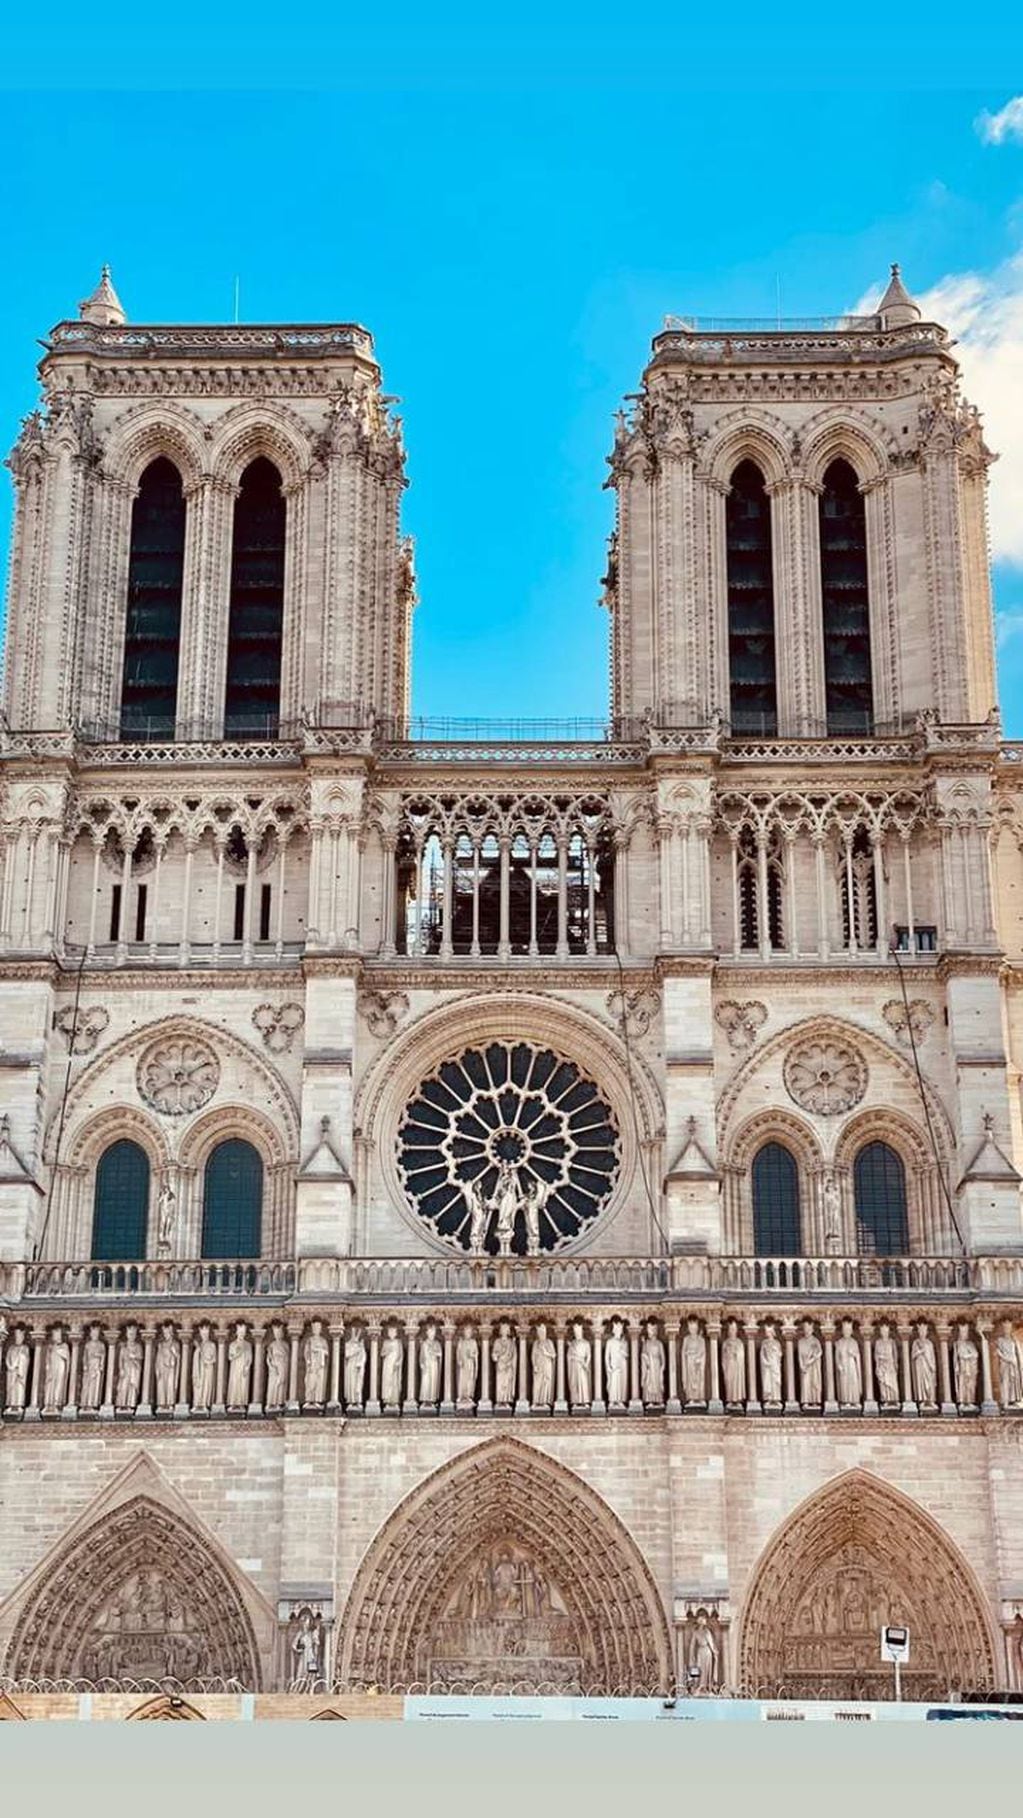 La influencer estuvo de paseo cerca de la Catedral de Notre Dame.